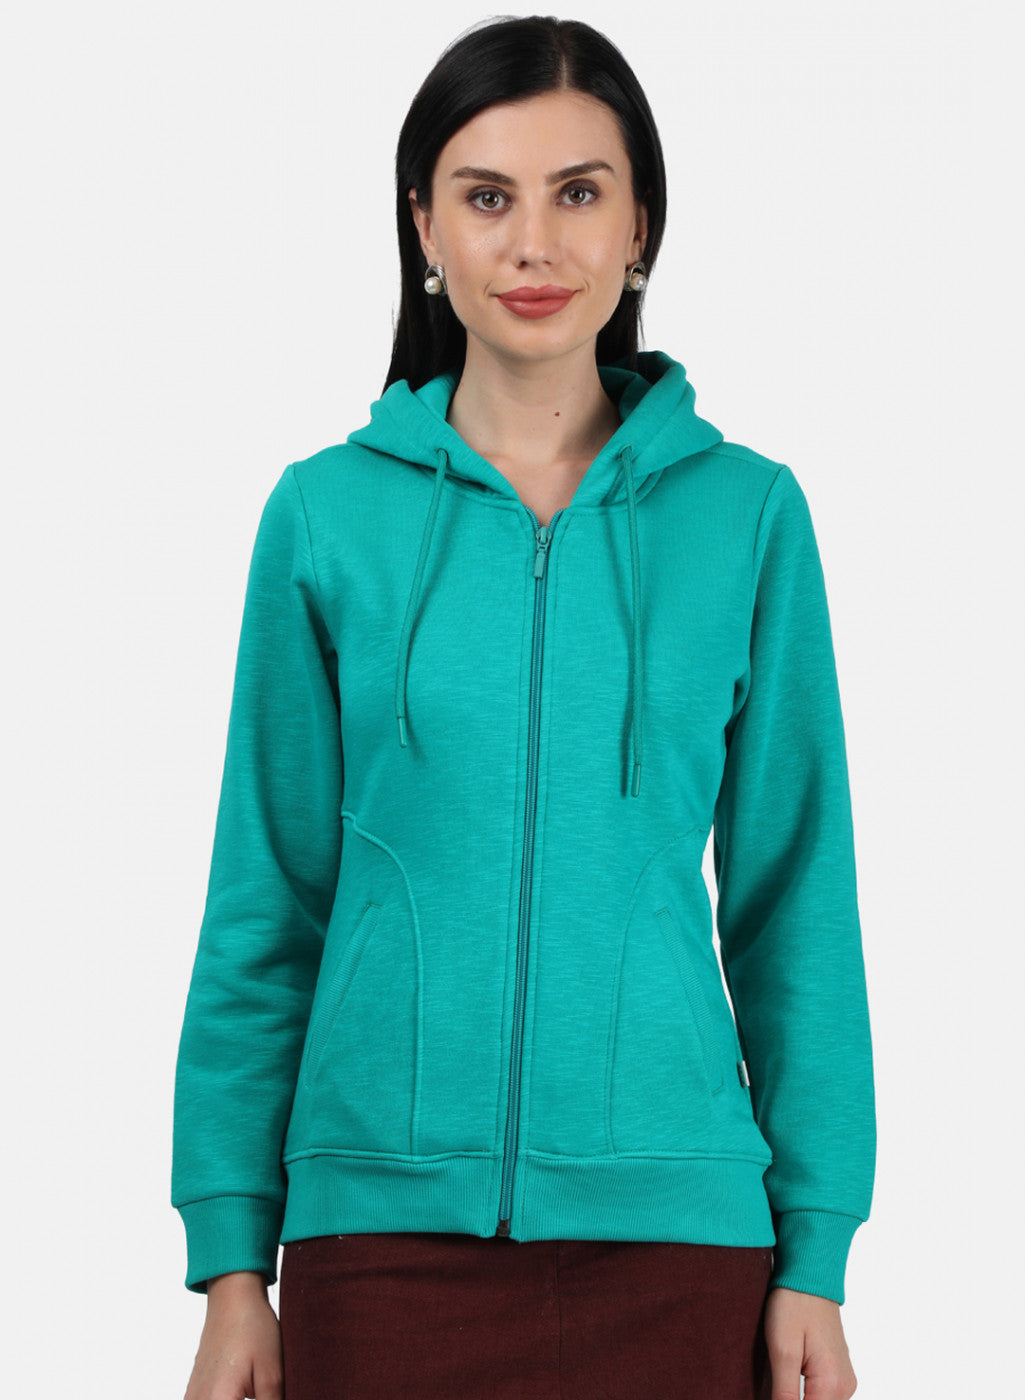 Buy Zipper Sweatshirts For Women - Ladies Zip Up Hoodies - Monte Carlo